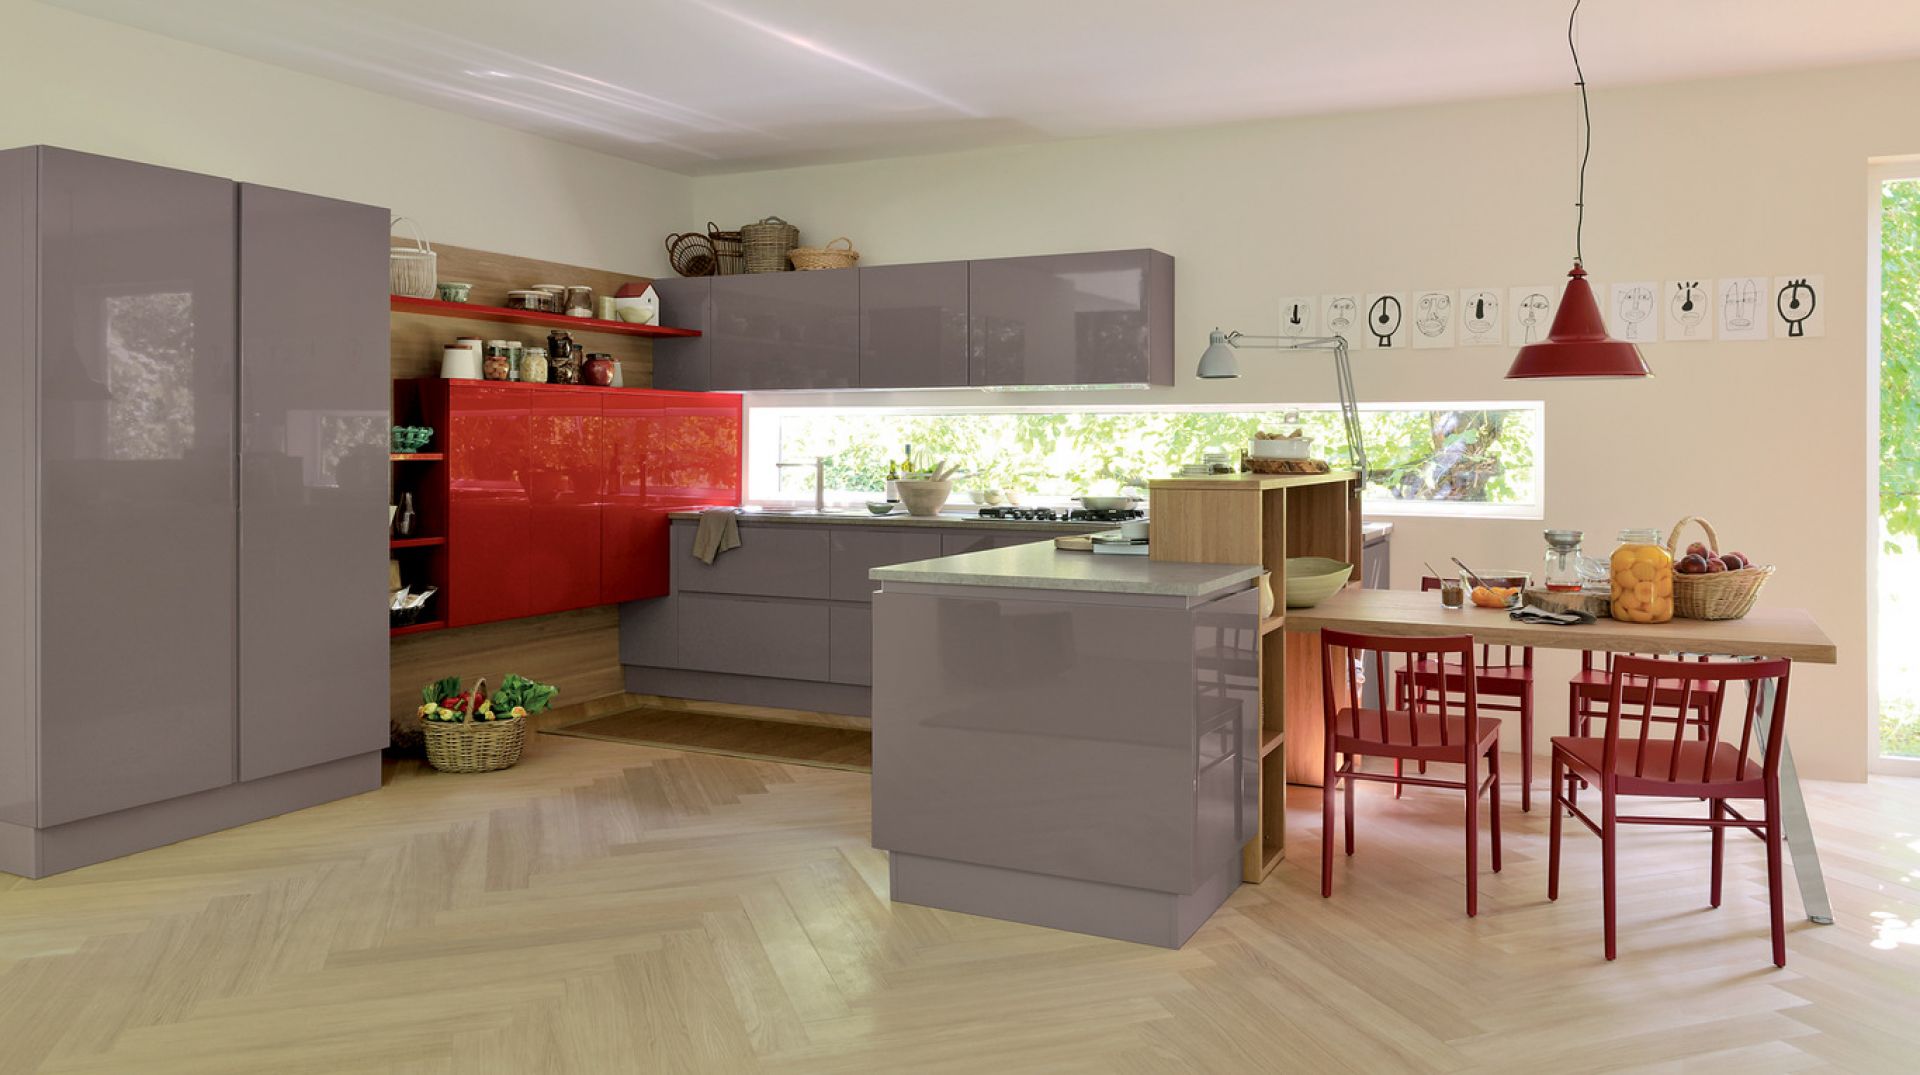 Nietypowo osadzone szafki sprawią, że kuchnia nabierze geometrycznego charakteru. Fot. Veneta Cucine